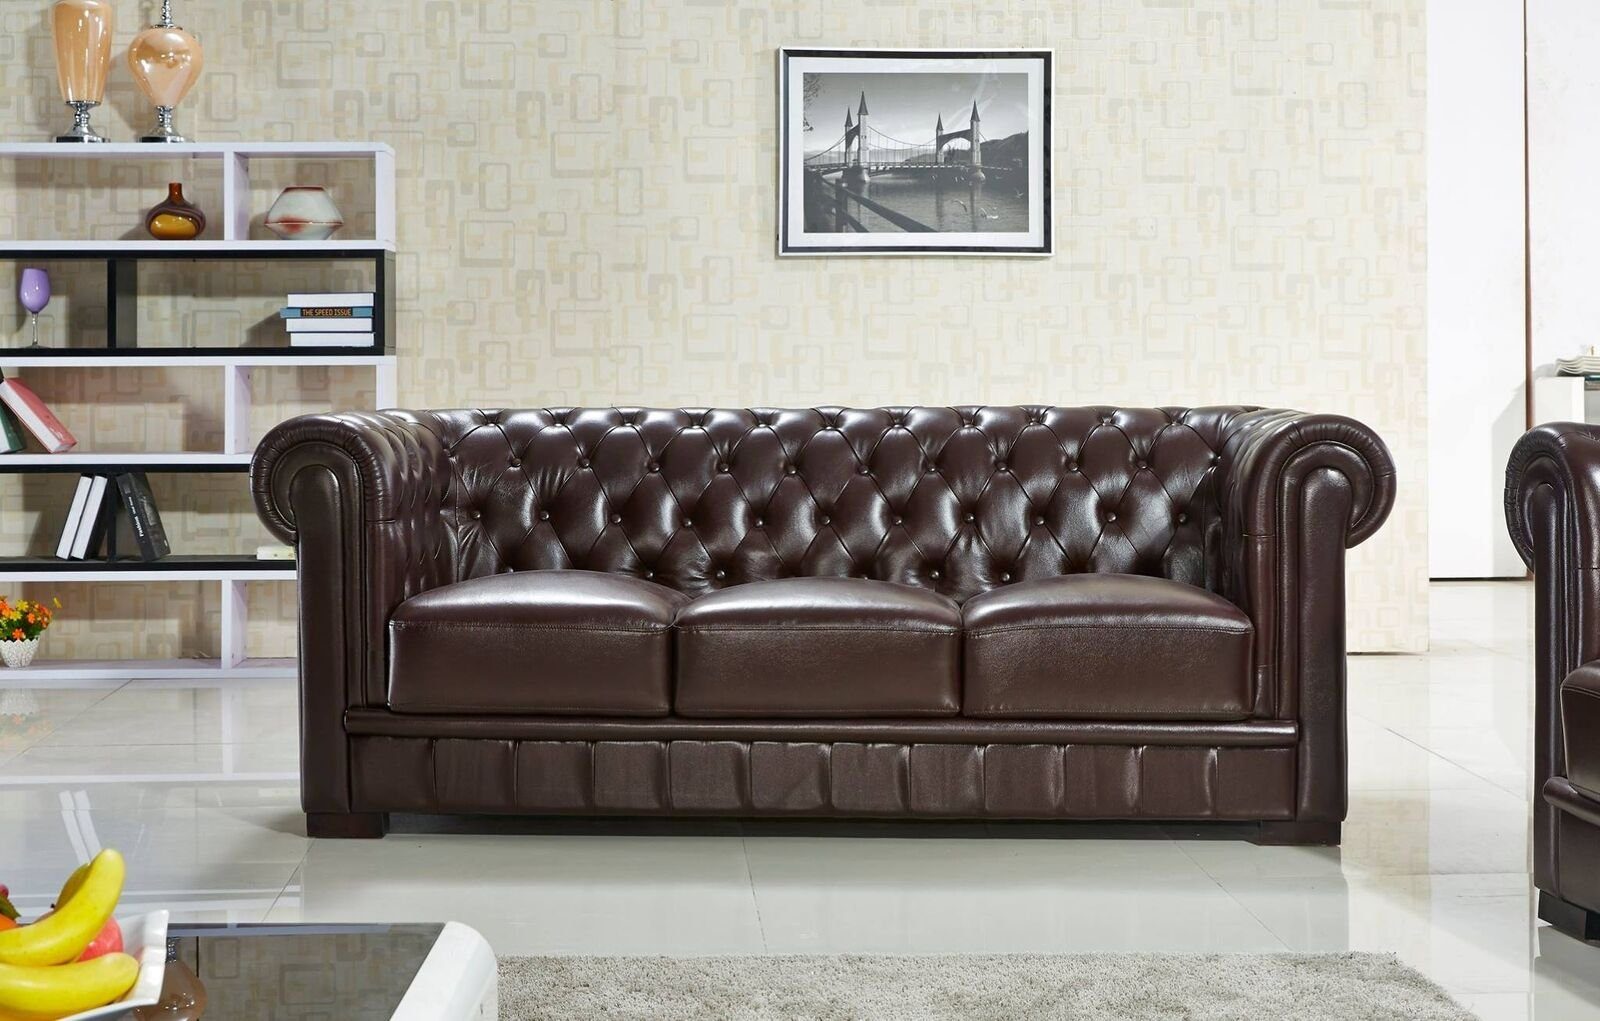 JVmoebel Chesterfield-Sofa Dreisitzer Couch Polster Design Sofa 3er Braun 100% Leder Sofort, 1 Teile, Made in Europa